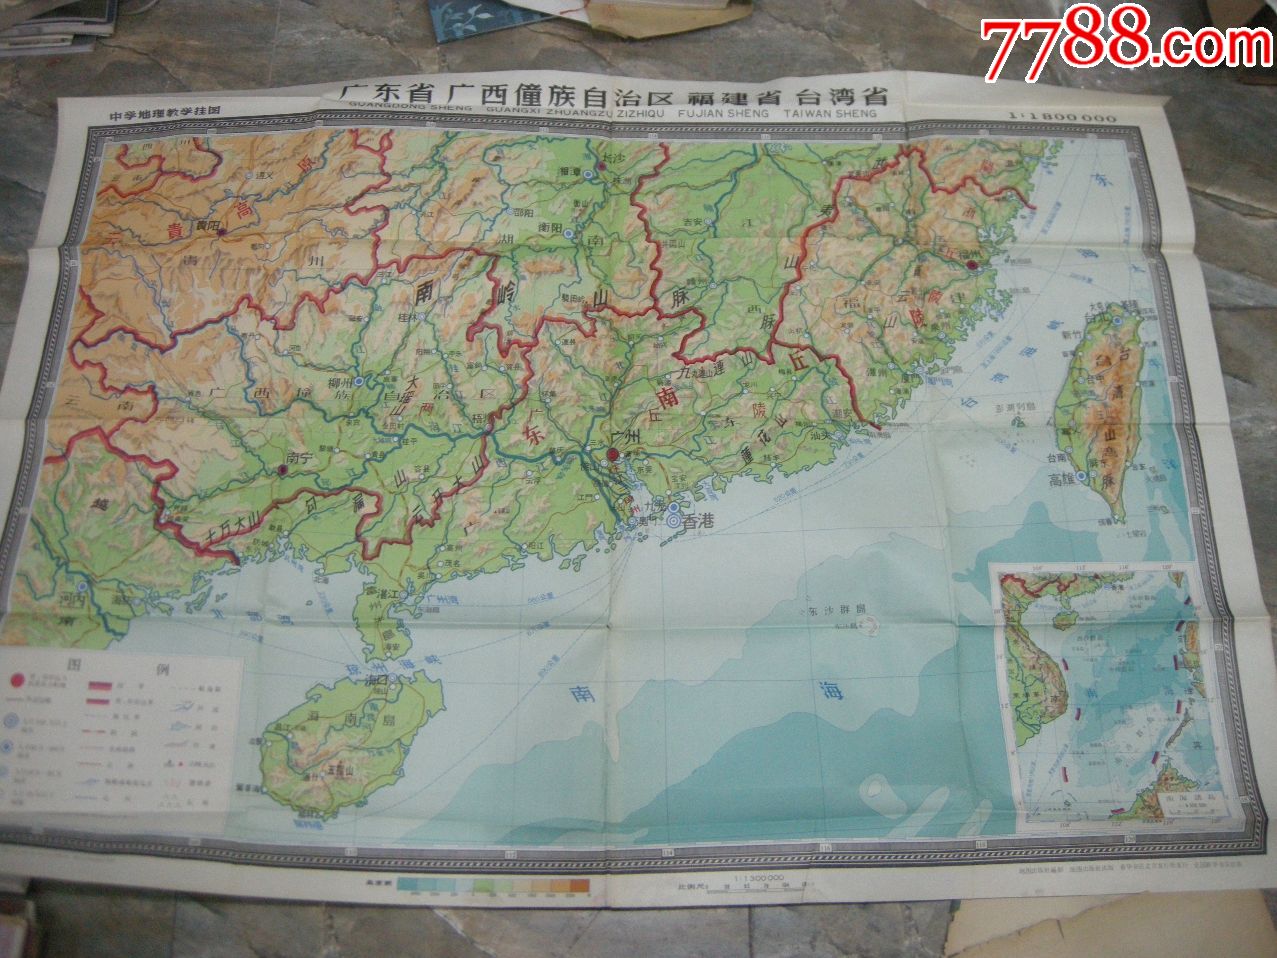 50年代地图,挂图;1963版《广东省,广西省,福建省,台湾省》